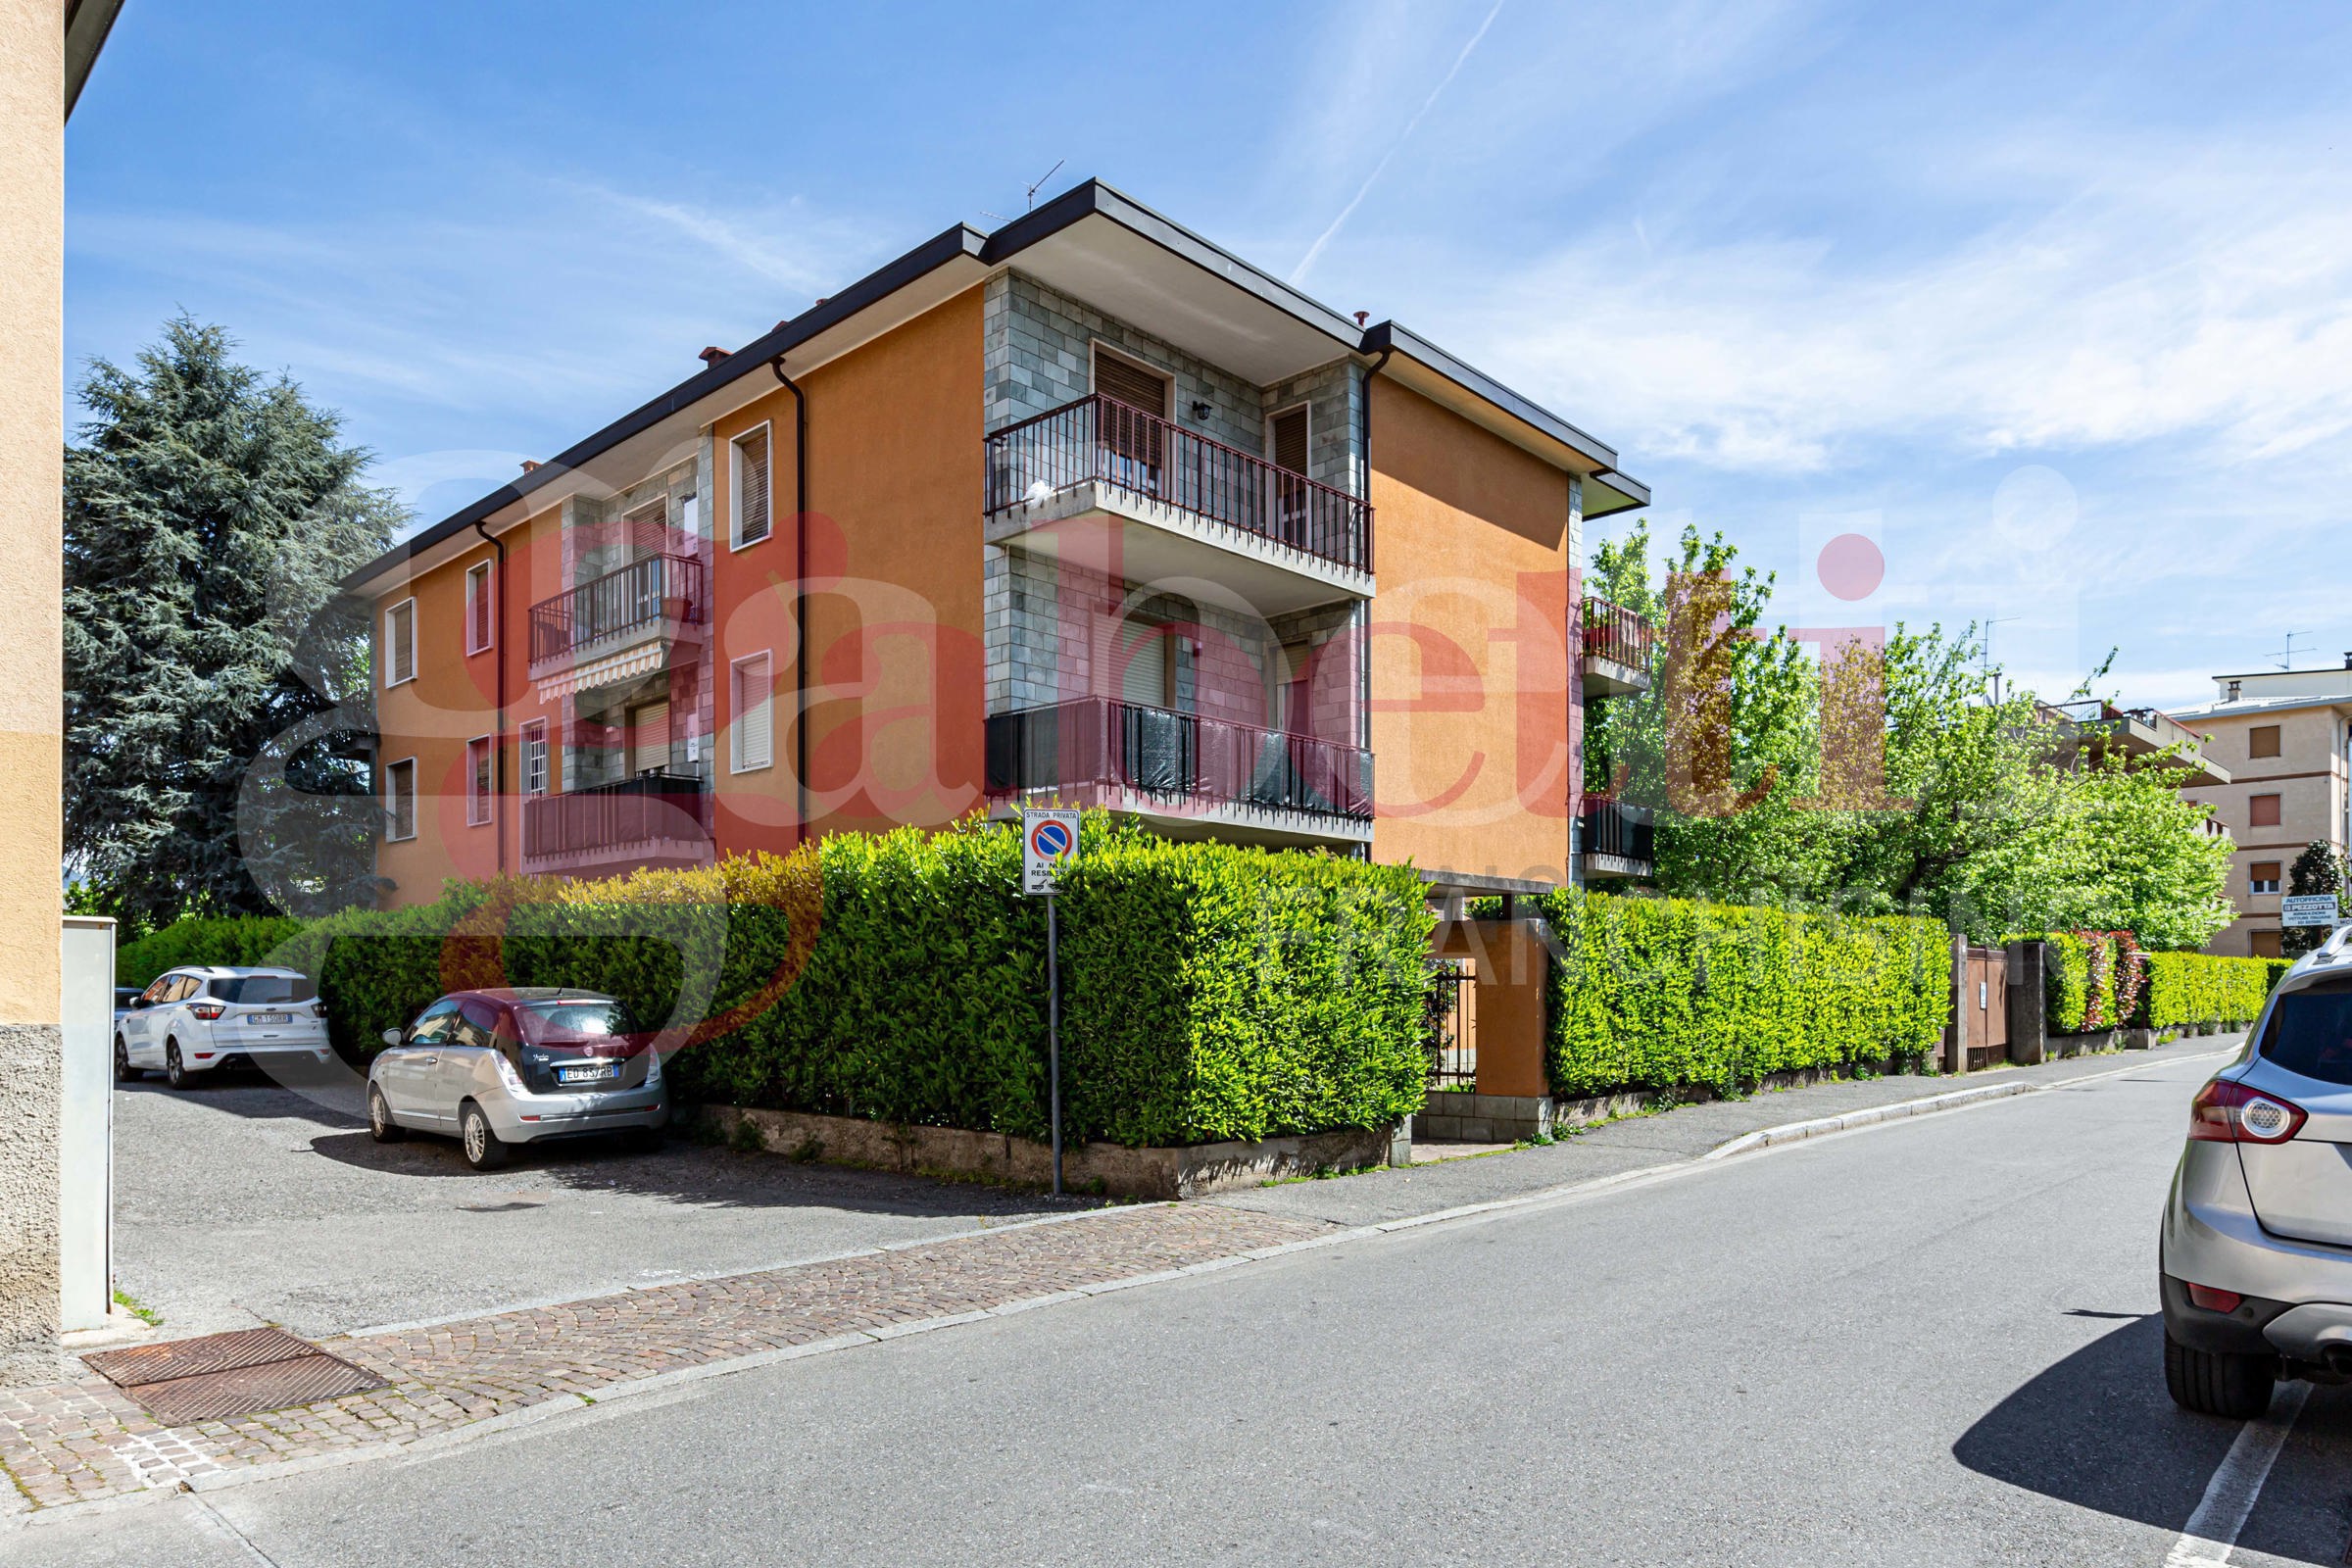 Appartamento in affitto a Gorle, 2 locali, prezzo € 65.000 | PortaleAgenzieImmobiliari.it